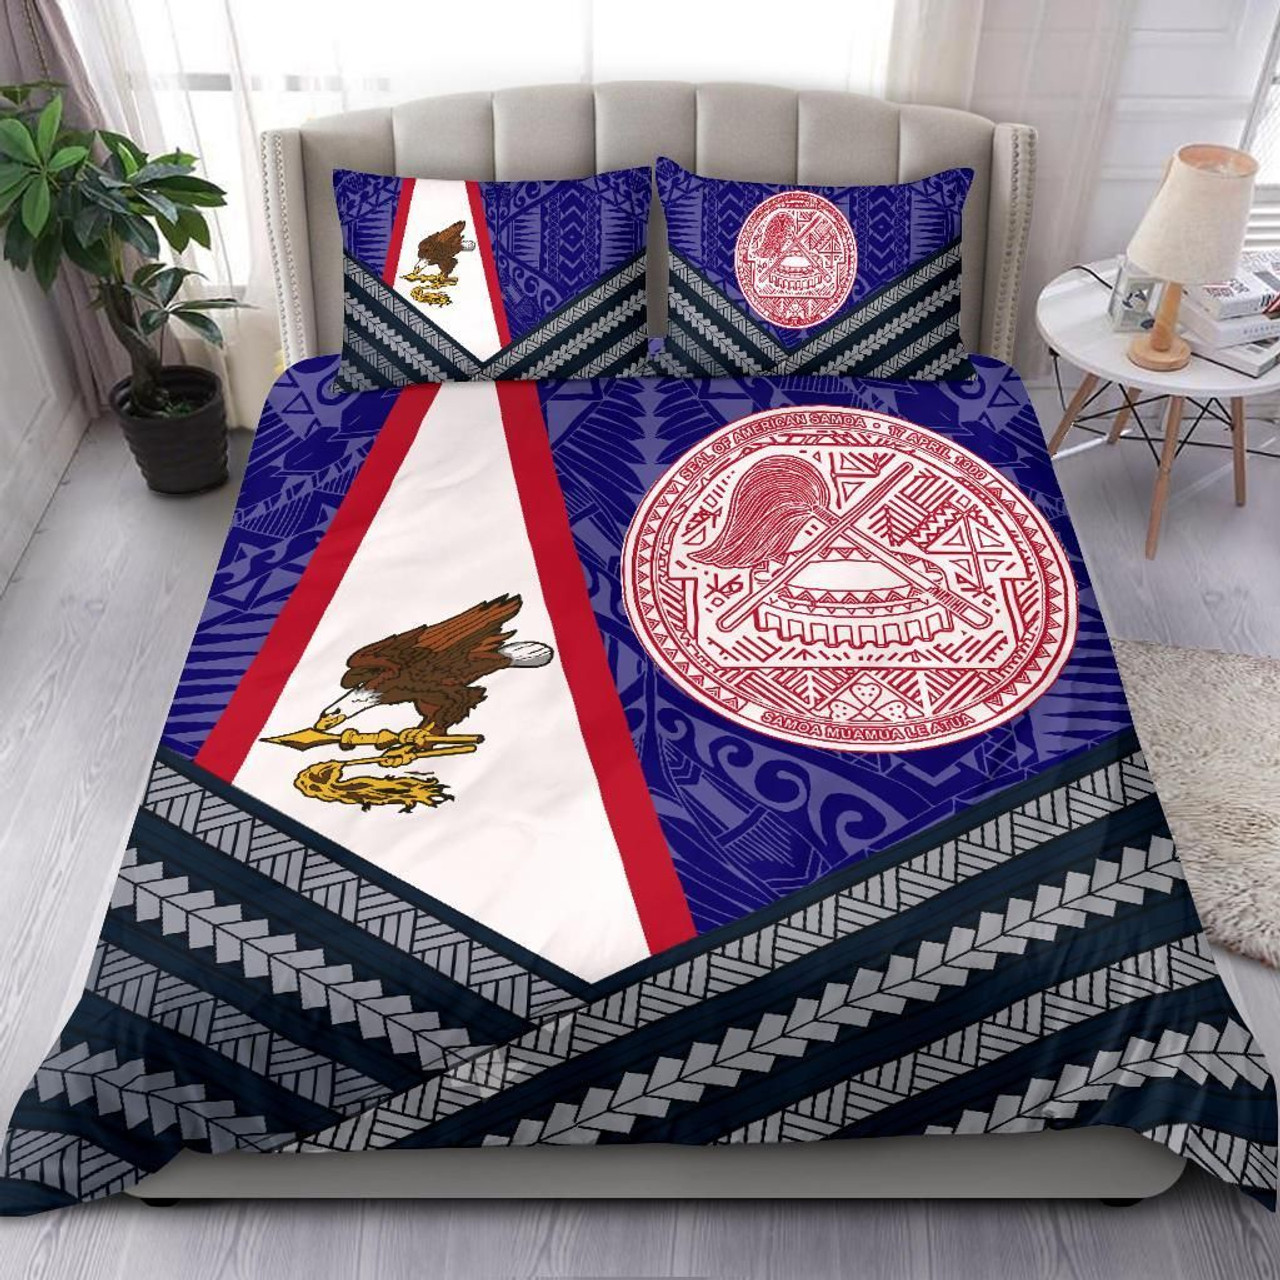 American Samoa Polynesian Bedding Set - American Samoa Flag And Seal 1